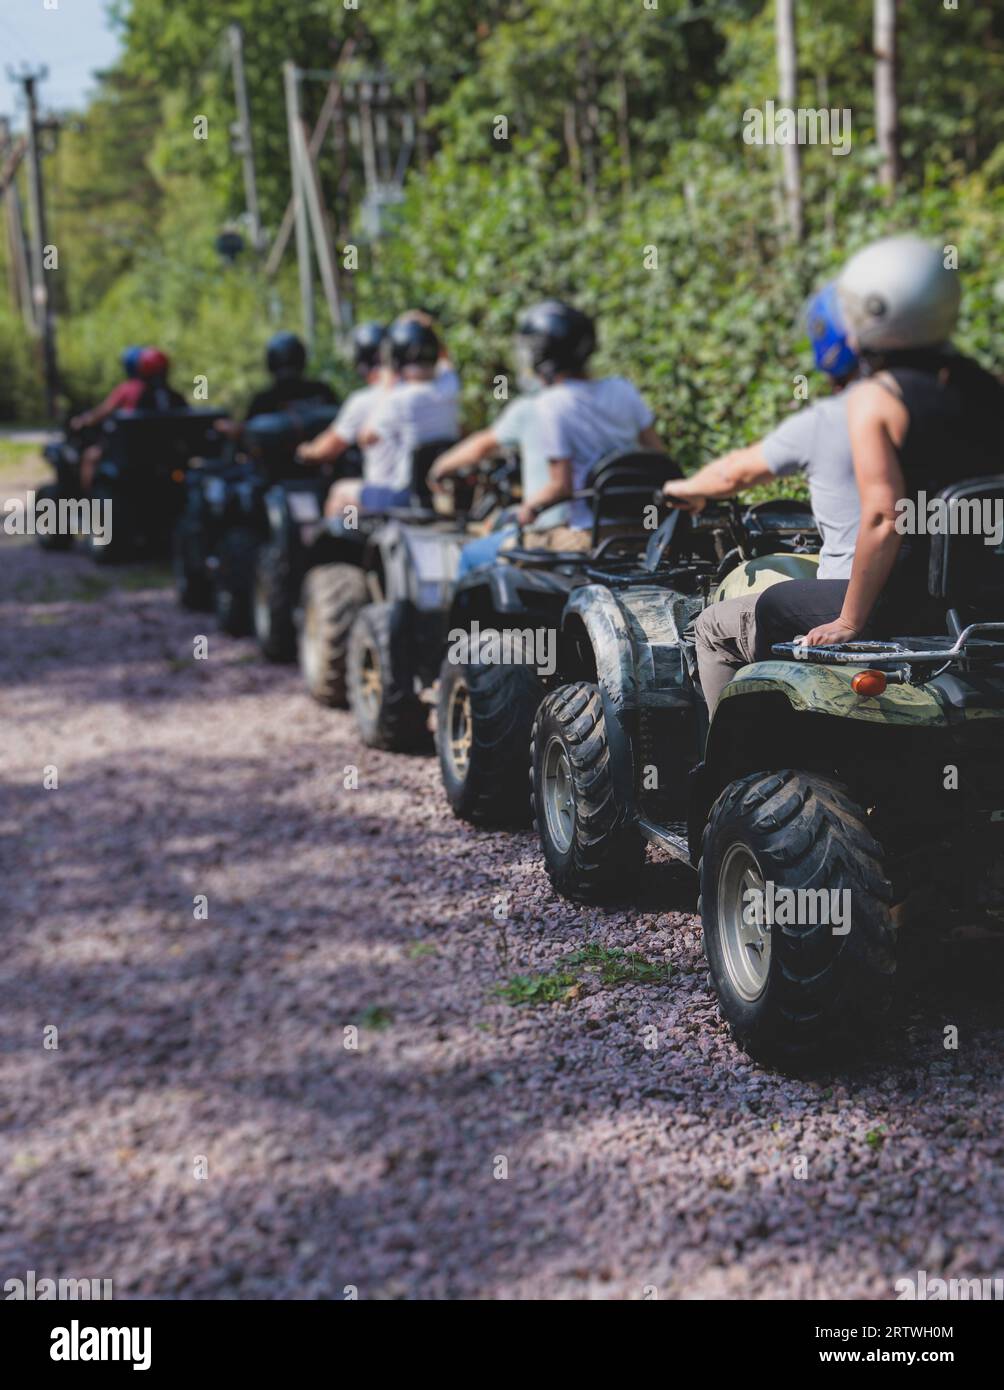 Grupo de jinetes que montan vehículo de ATV que cruzan la carretera rural del bosque, proceso de conducir un vehículo de alquiler, todo terreno vehículo de la bici quad, durante tou tou fuera de la carretera Foto de stock